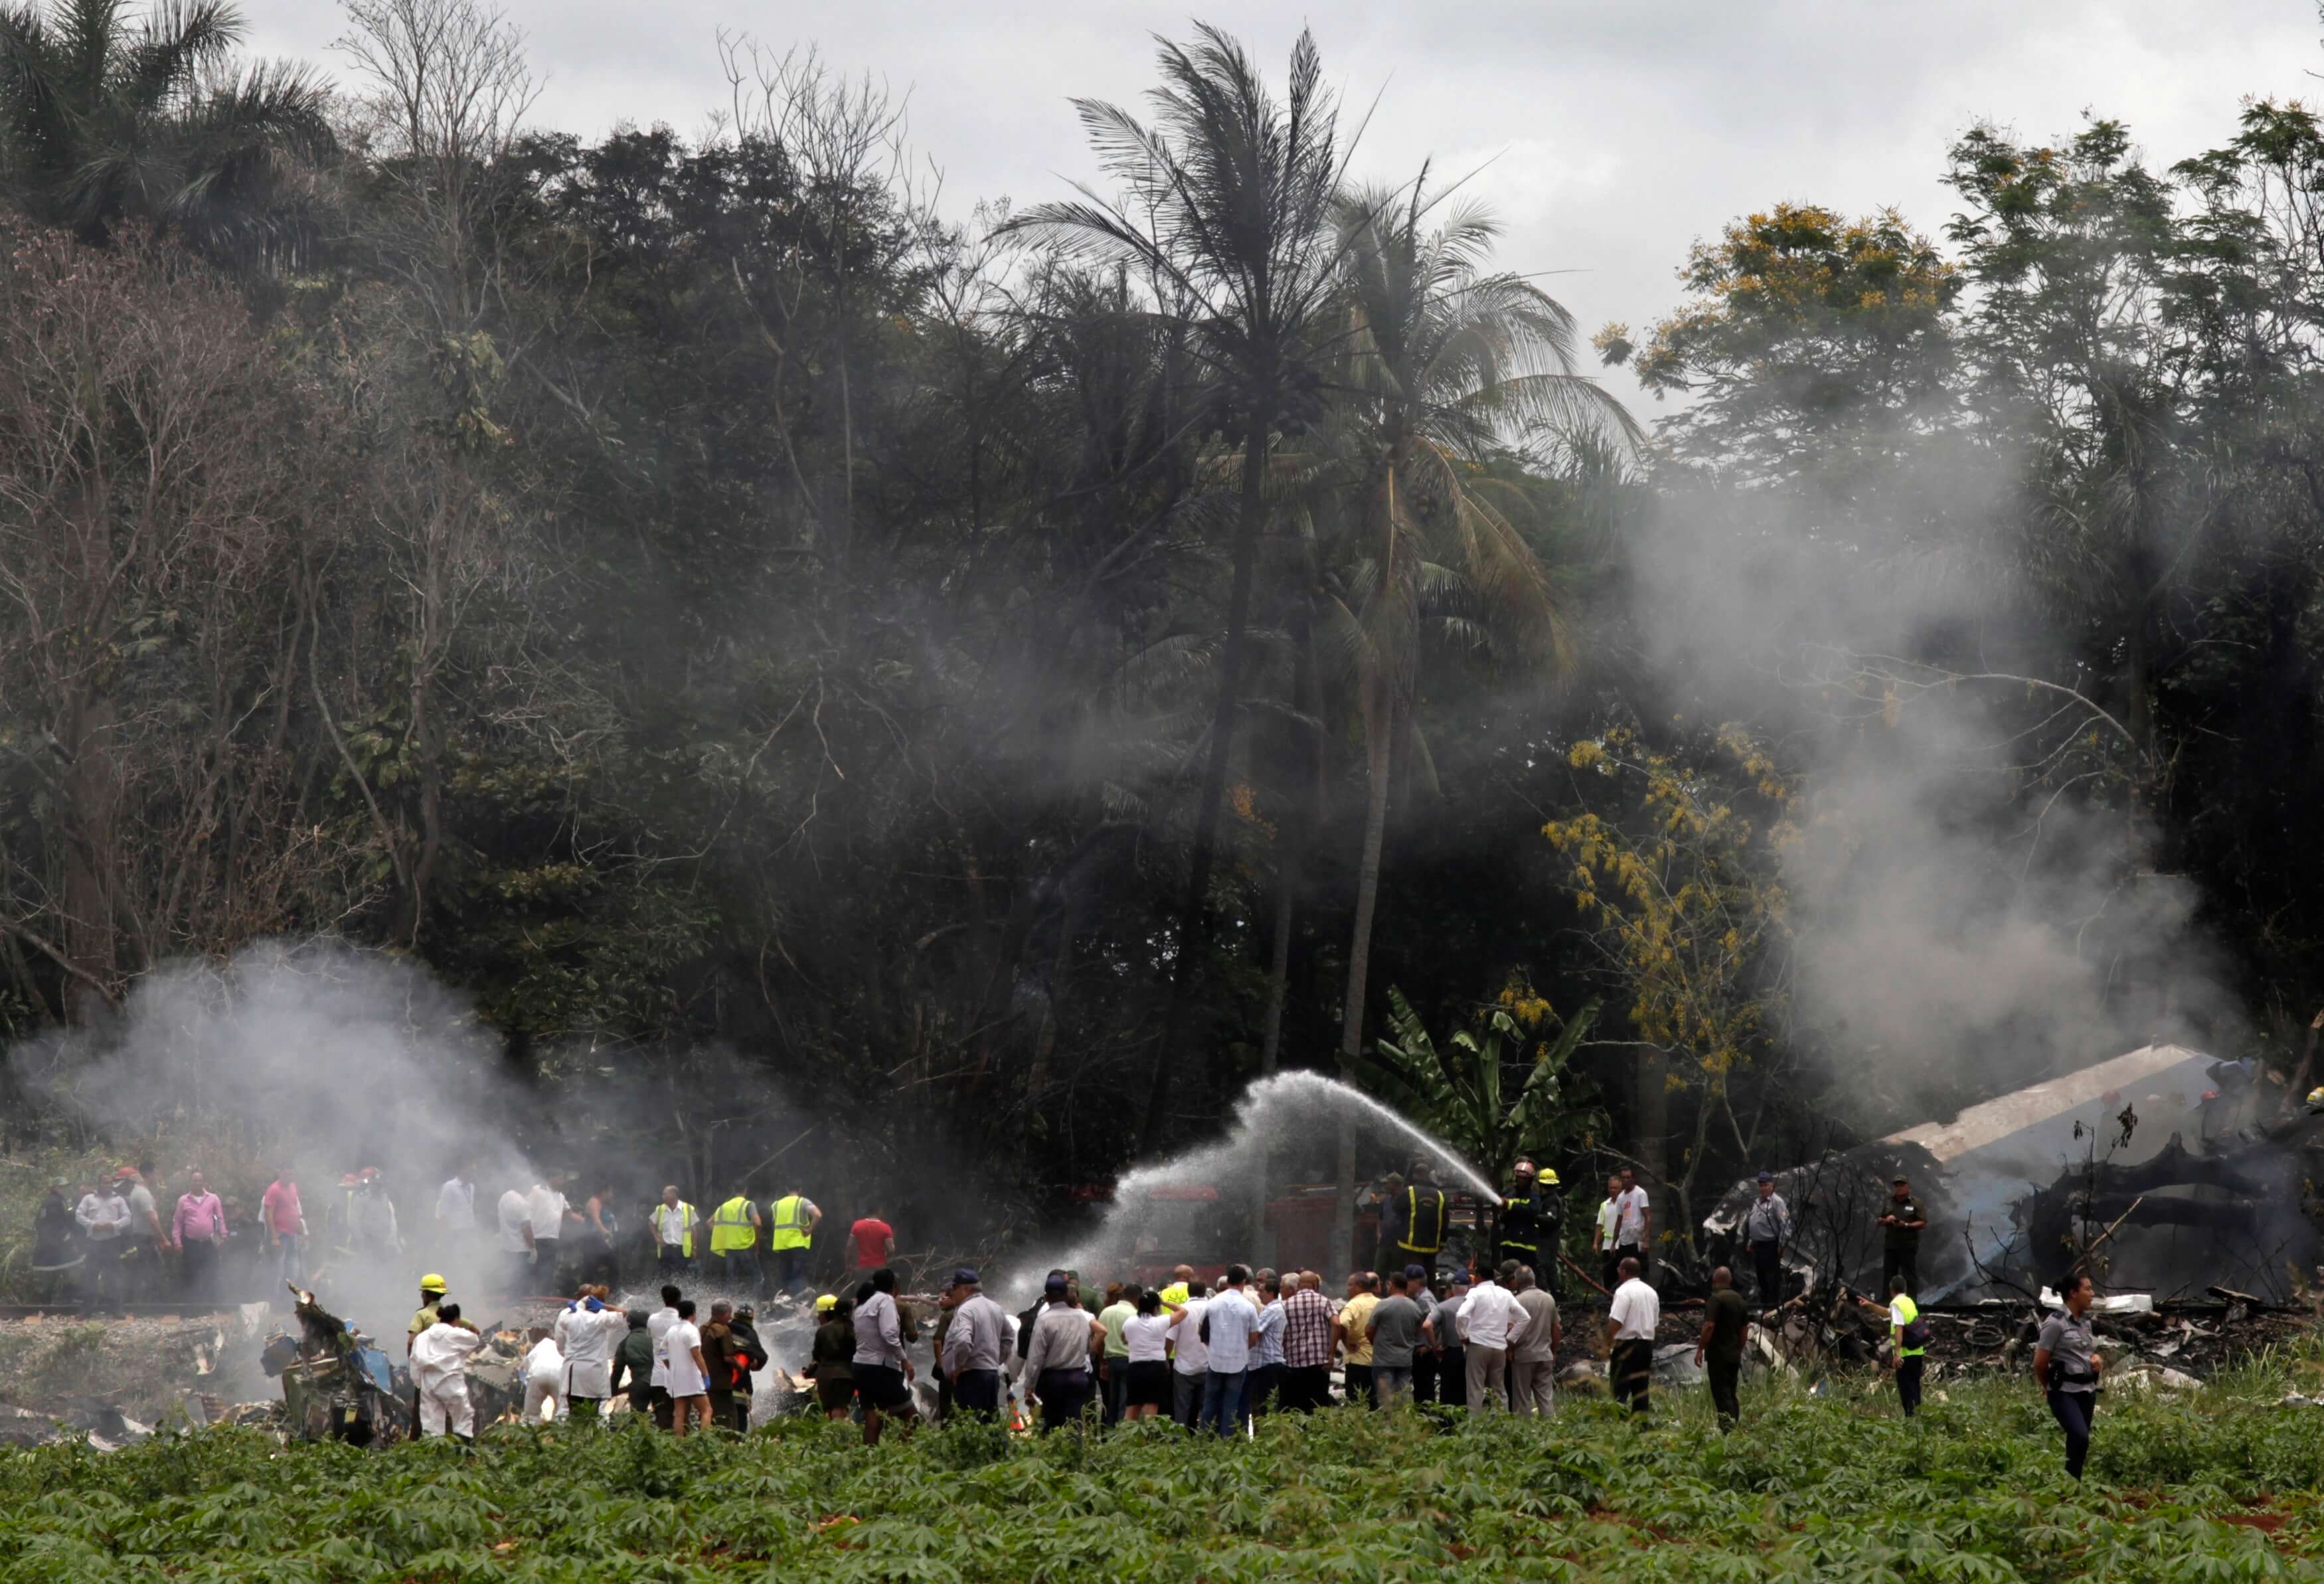 Cancillería activa protocolos de emergencia tras desplome de avión en Cuba